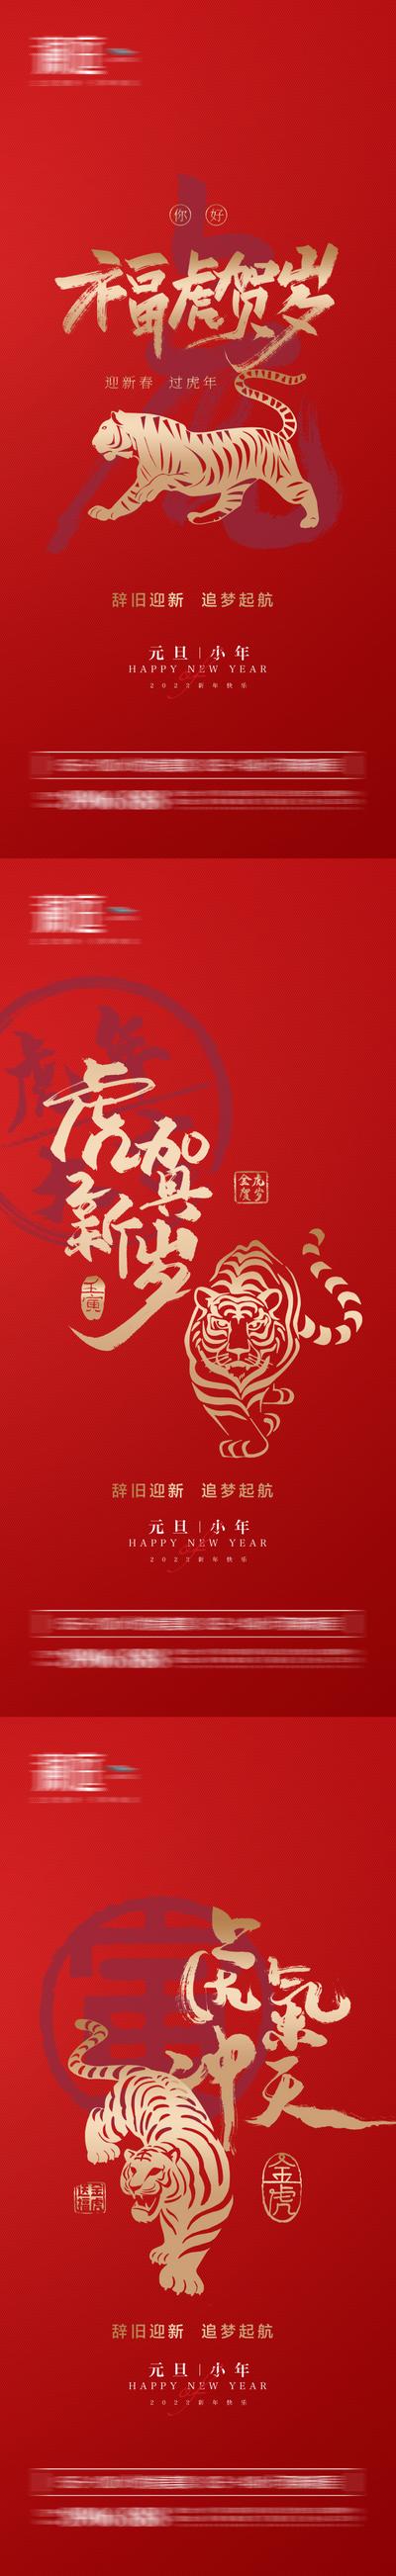 南门网 海报 房地产 公历节日 元旦 虎年 老虎 剪纸 红金 系列